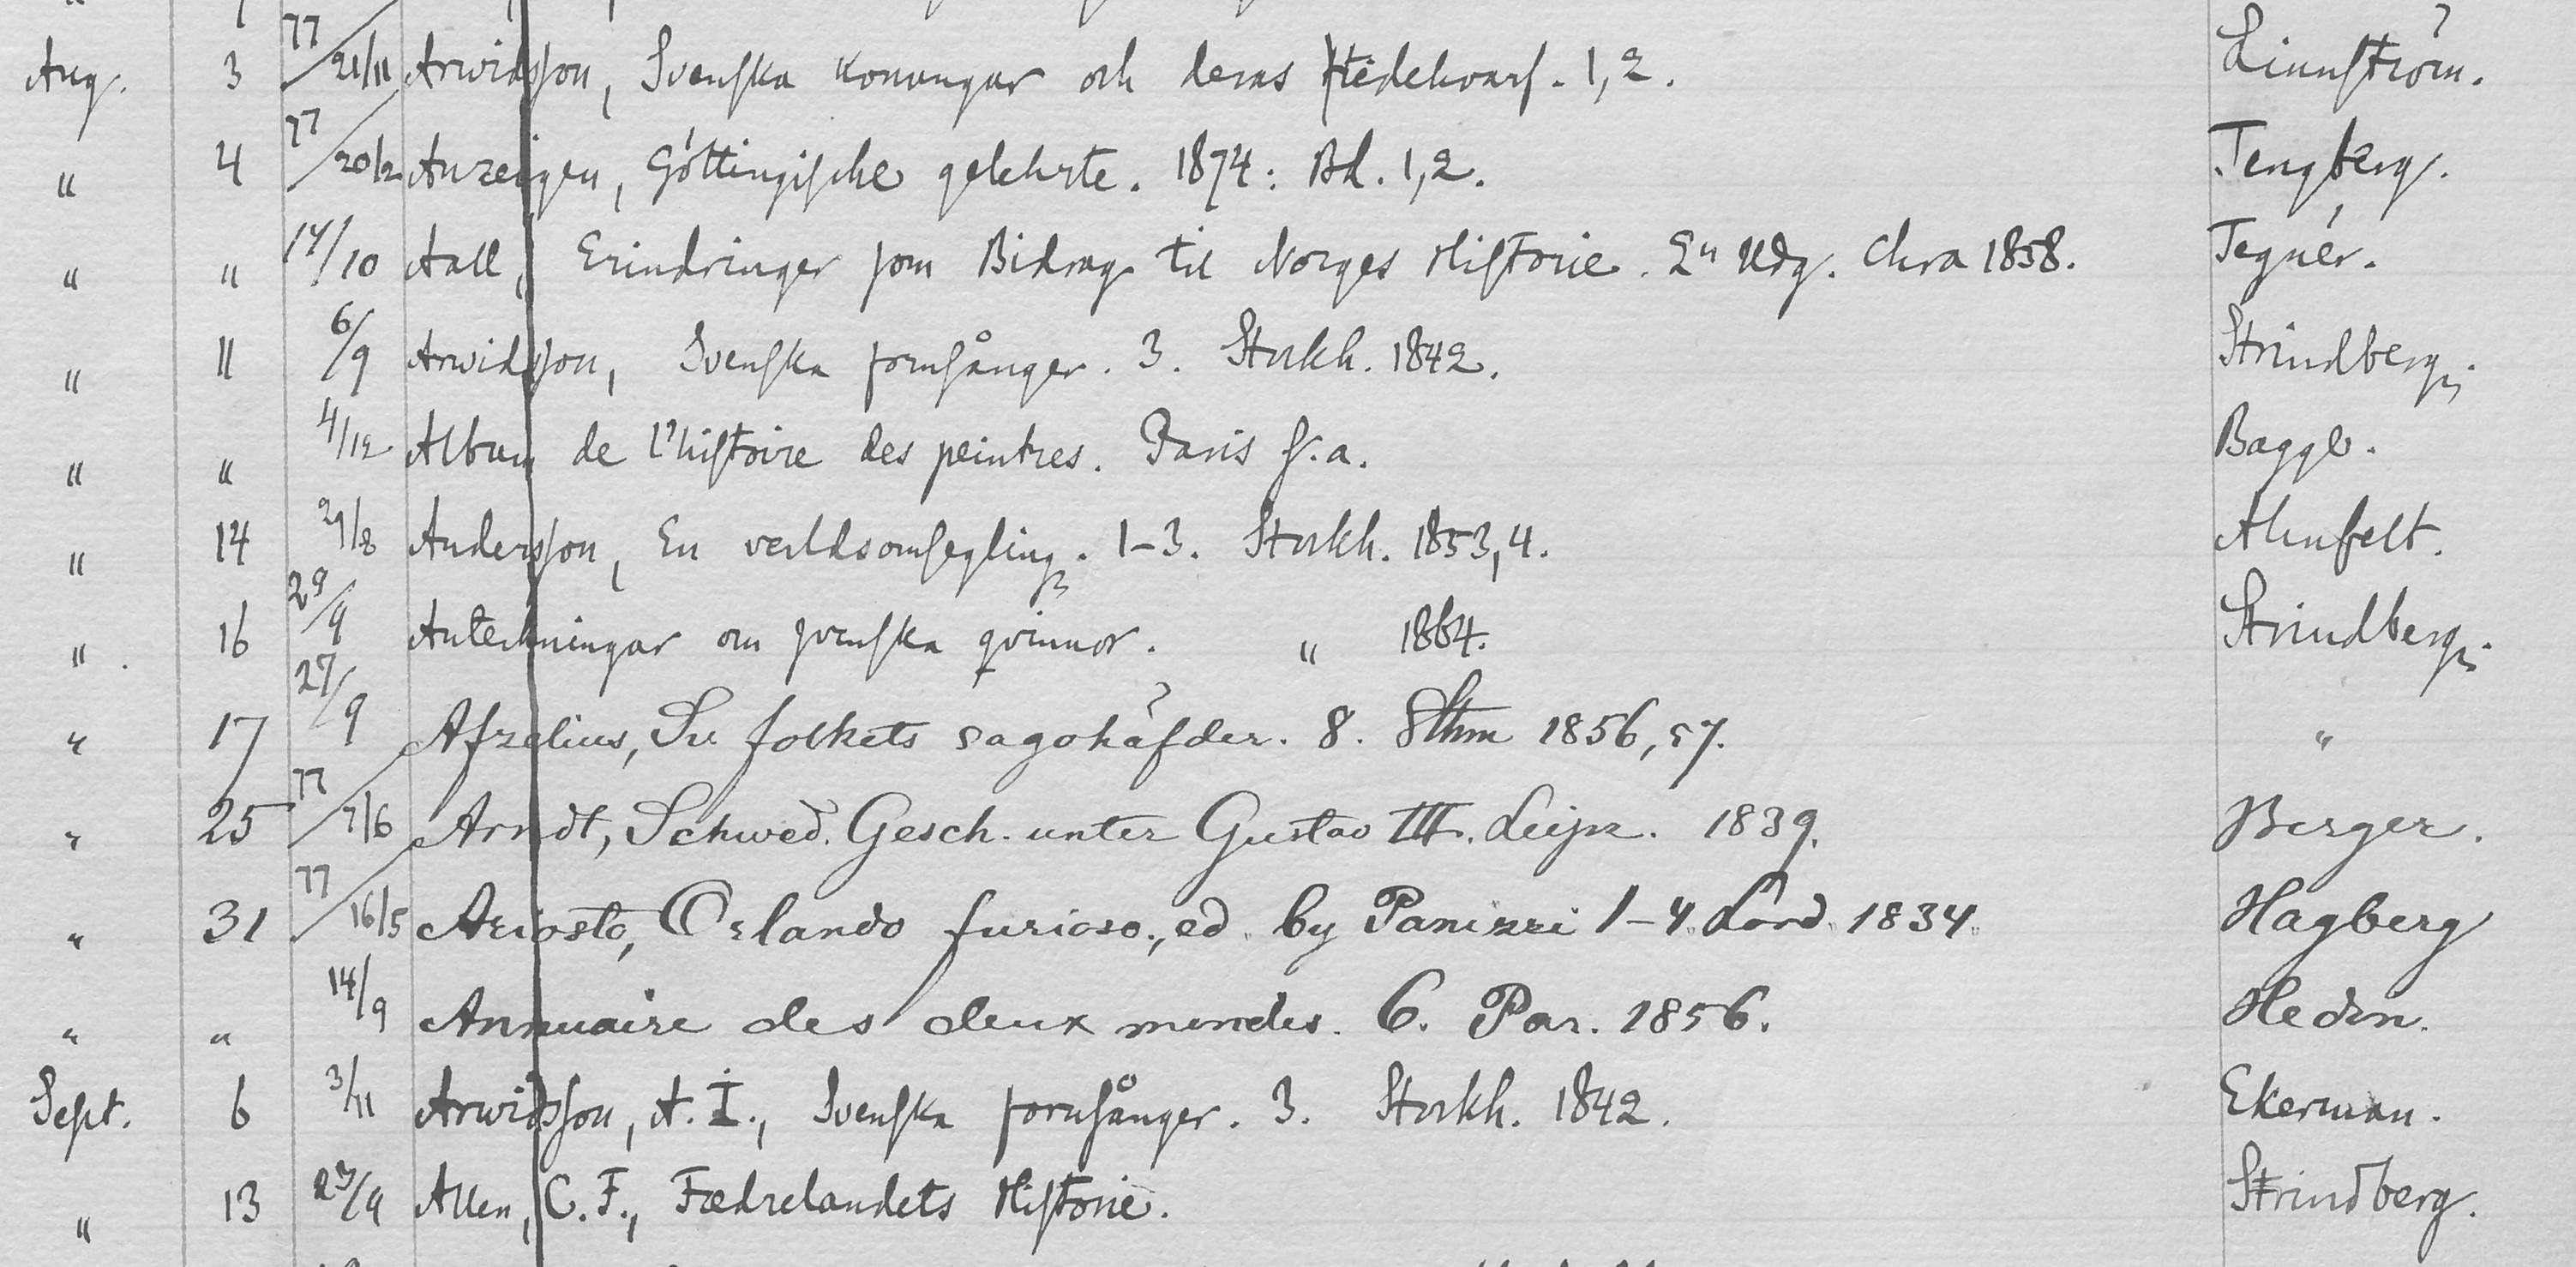 Sida ur utlåningsbok där titel, datum och låntagarnamn skrivits för hand. Strindbergs namn förekommer bland låntagarna. 